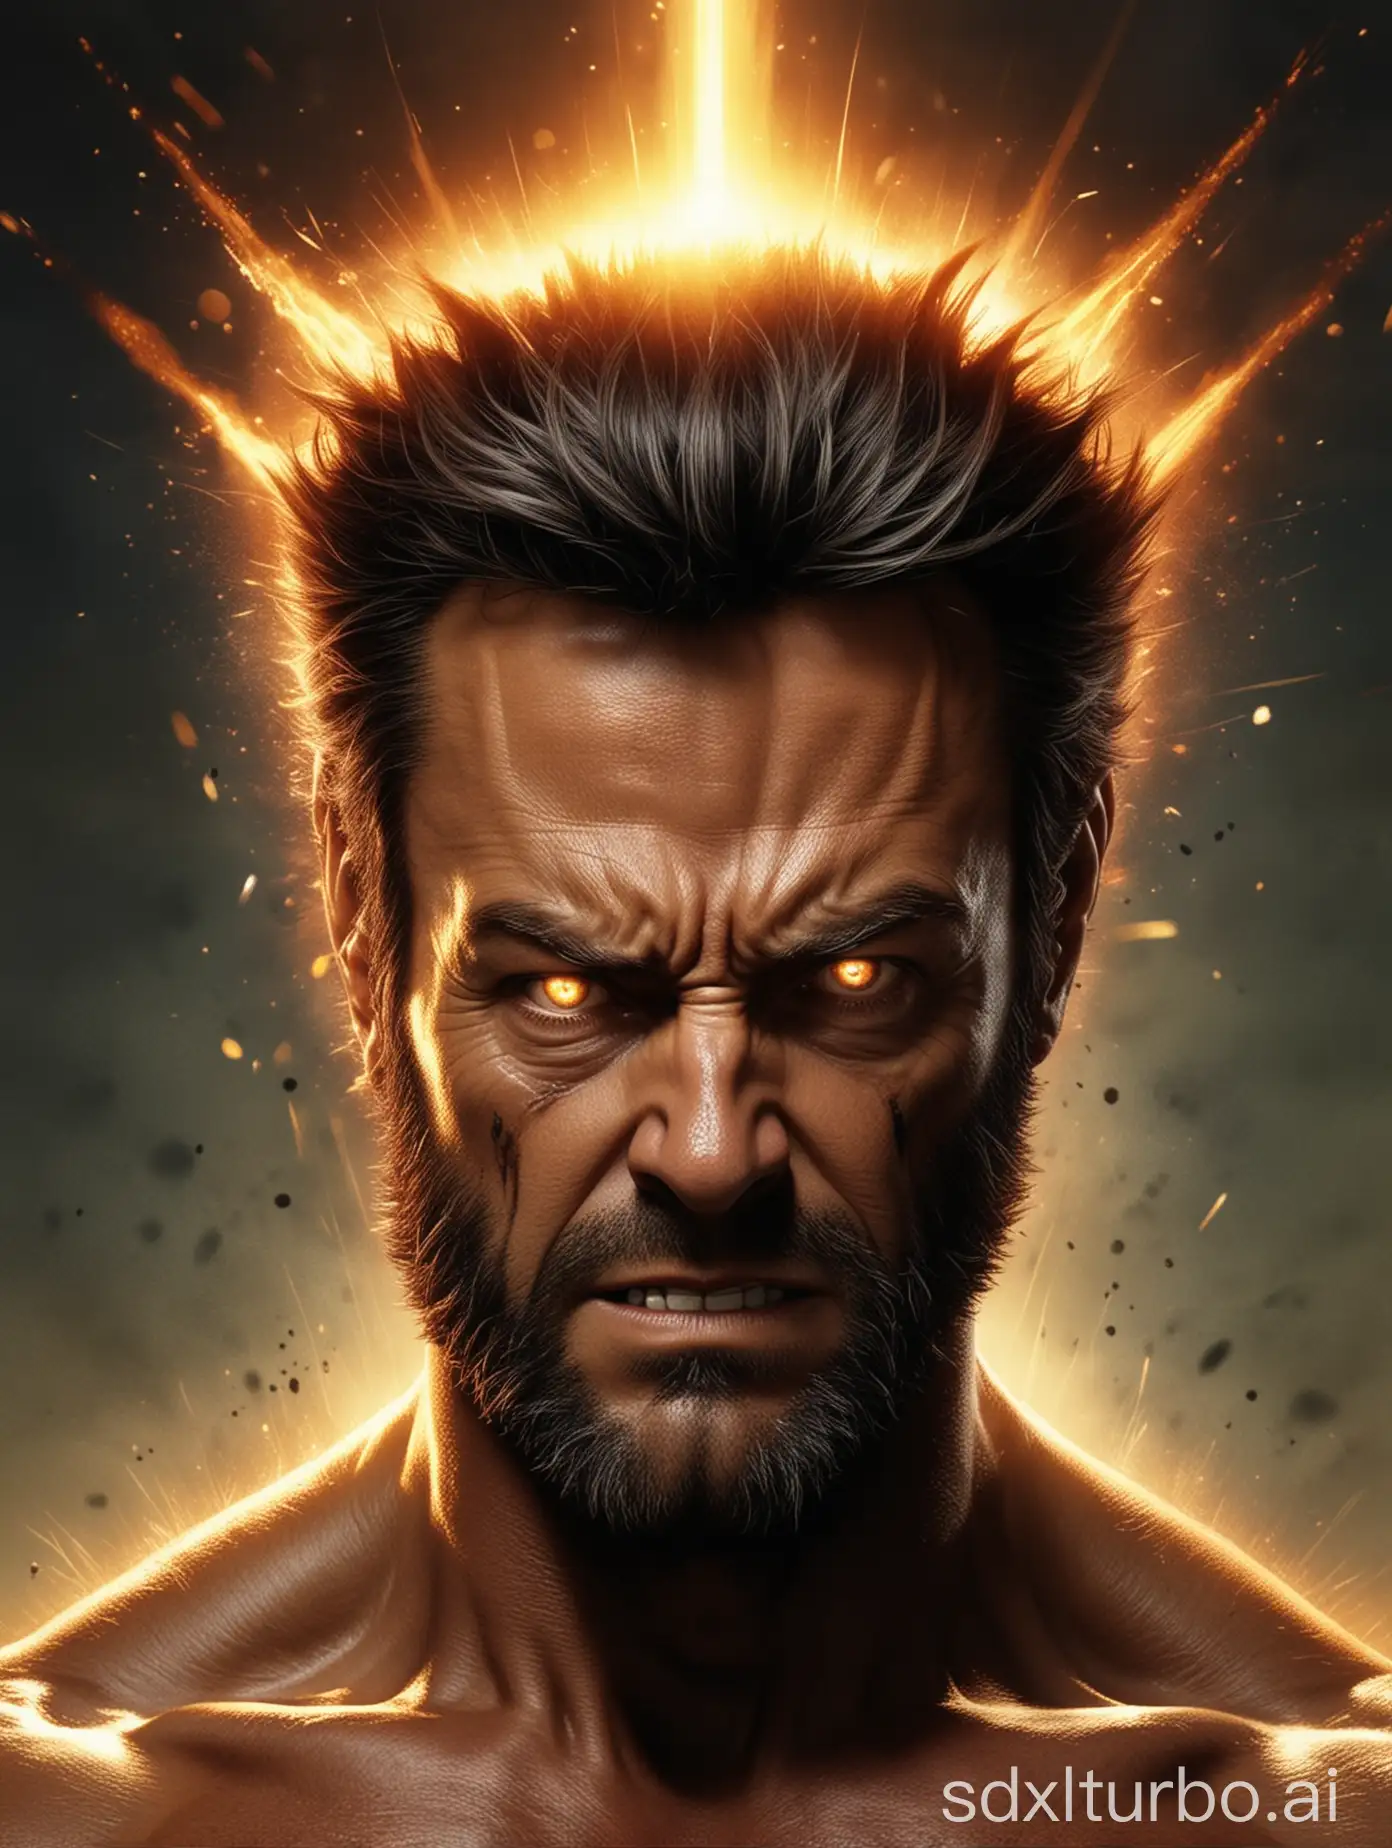 Explosion nucléaire sur la tête de Wolverine
